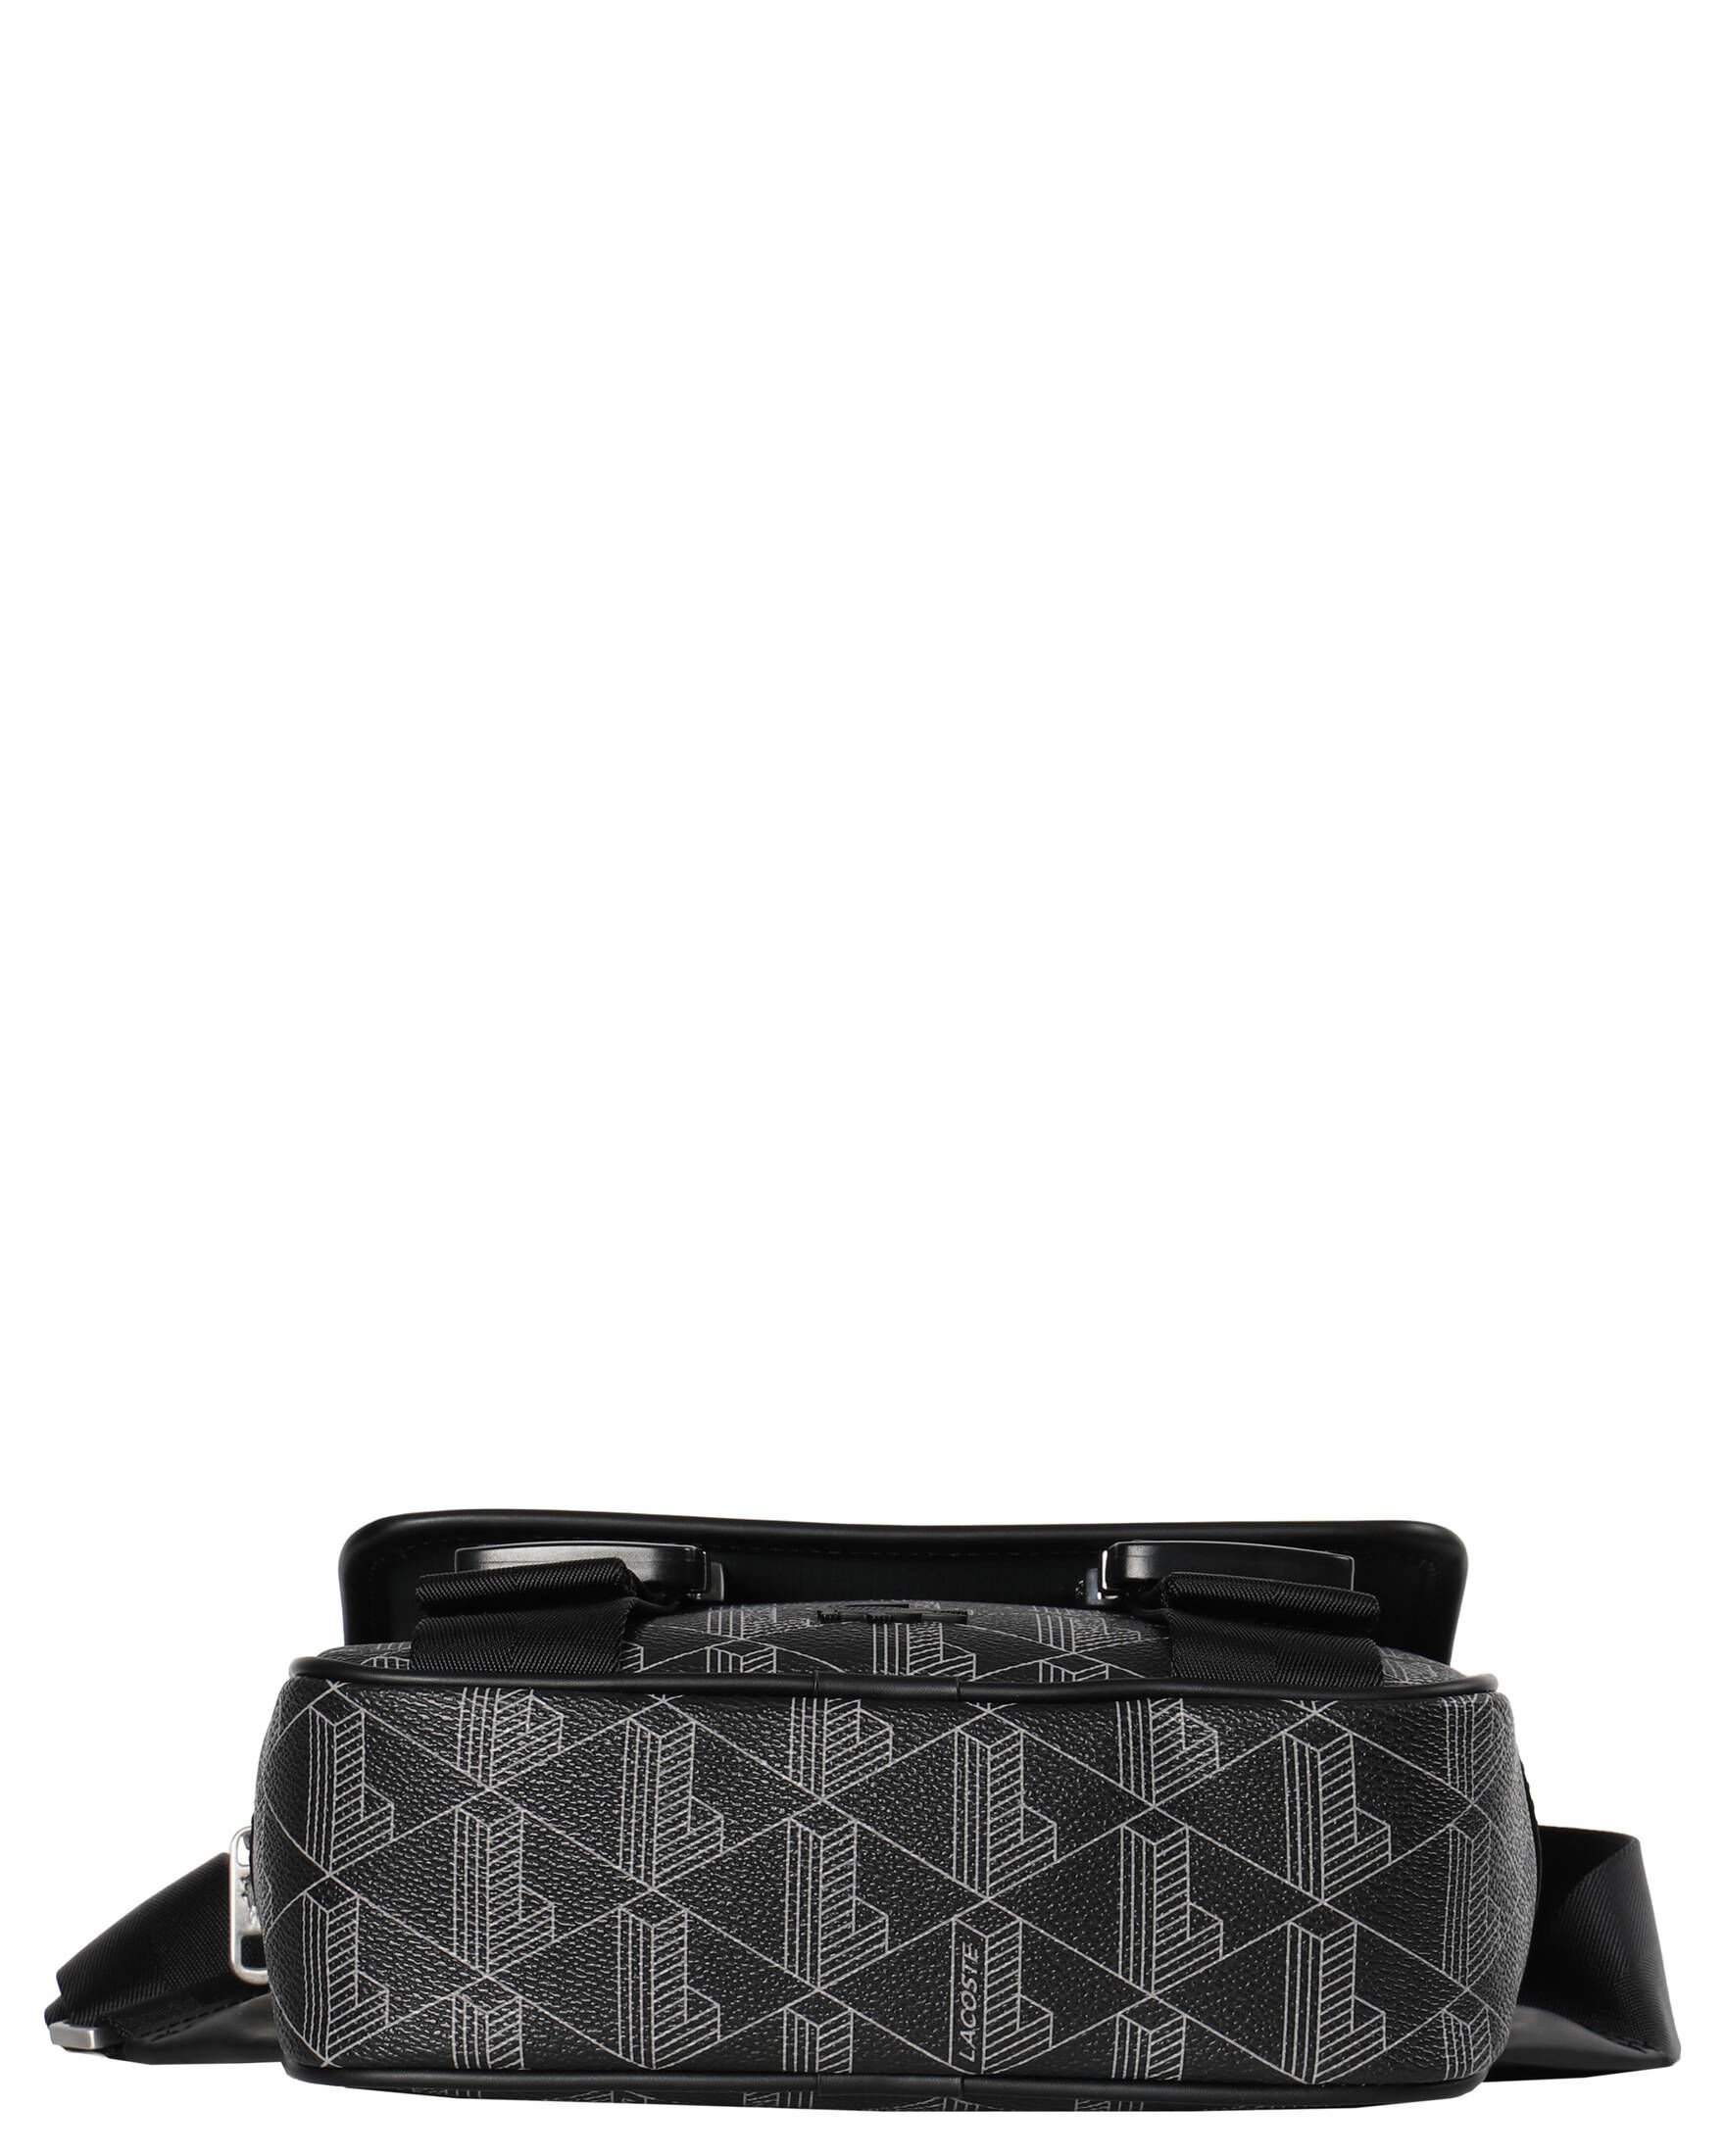 Lacoste The Blend Umhängetasche 25 cm in schwarz bestellen - 29979801